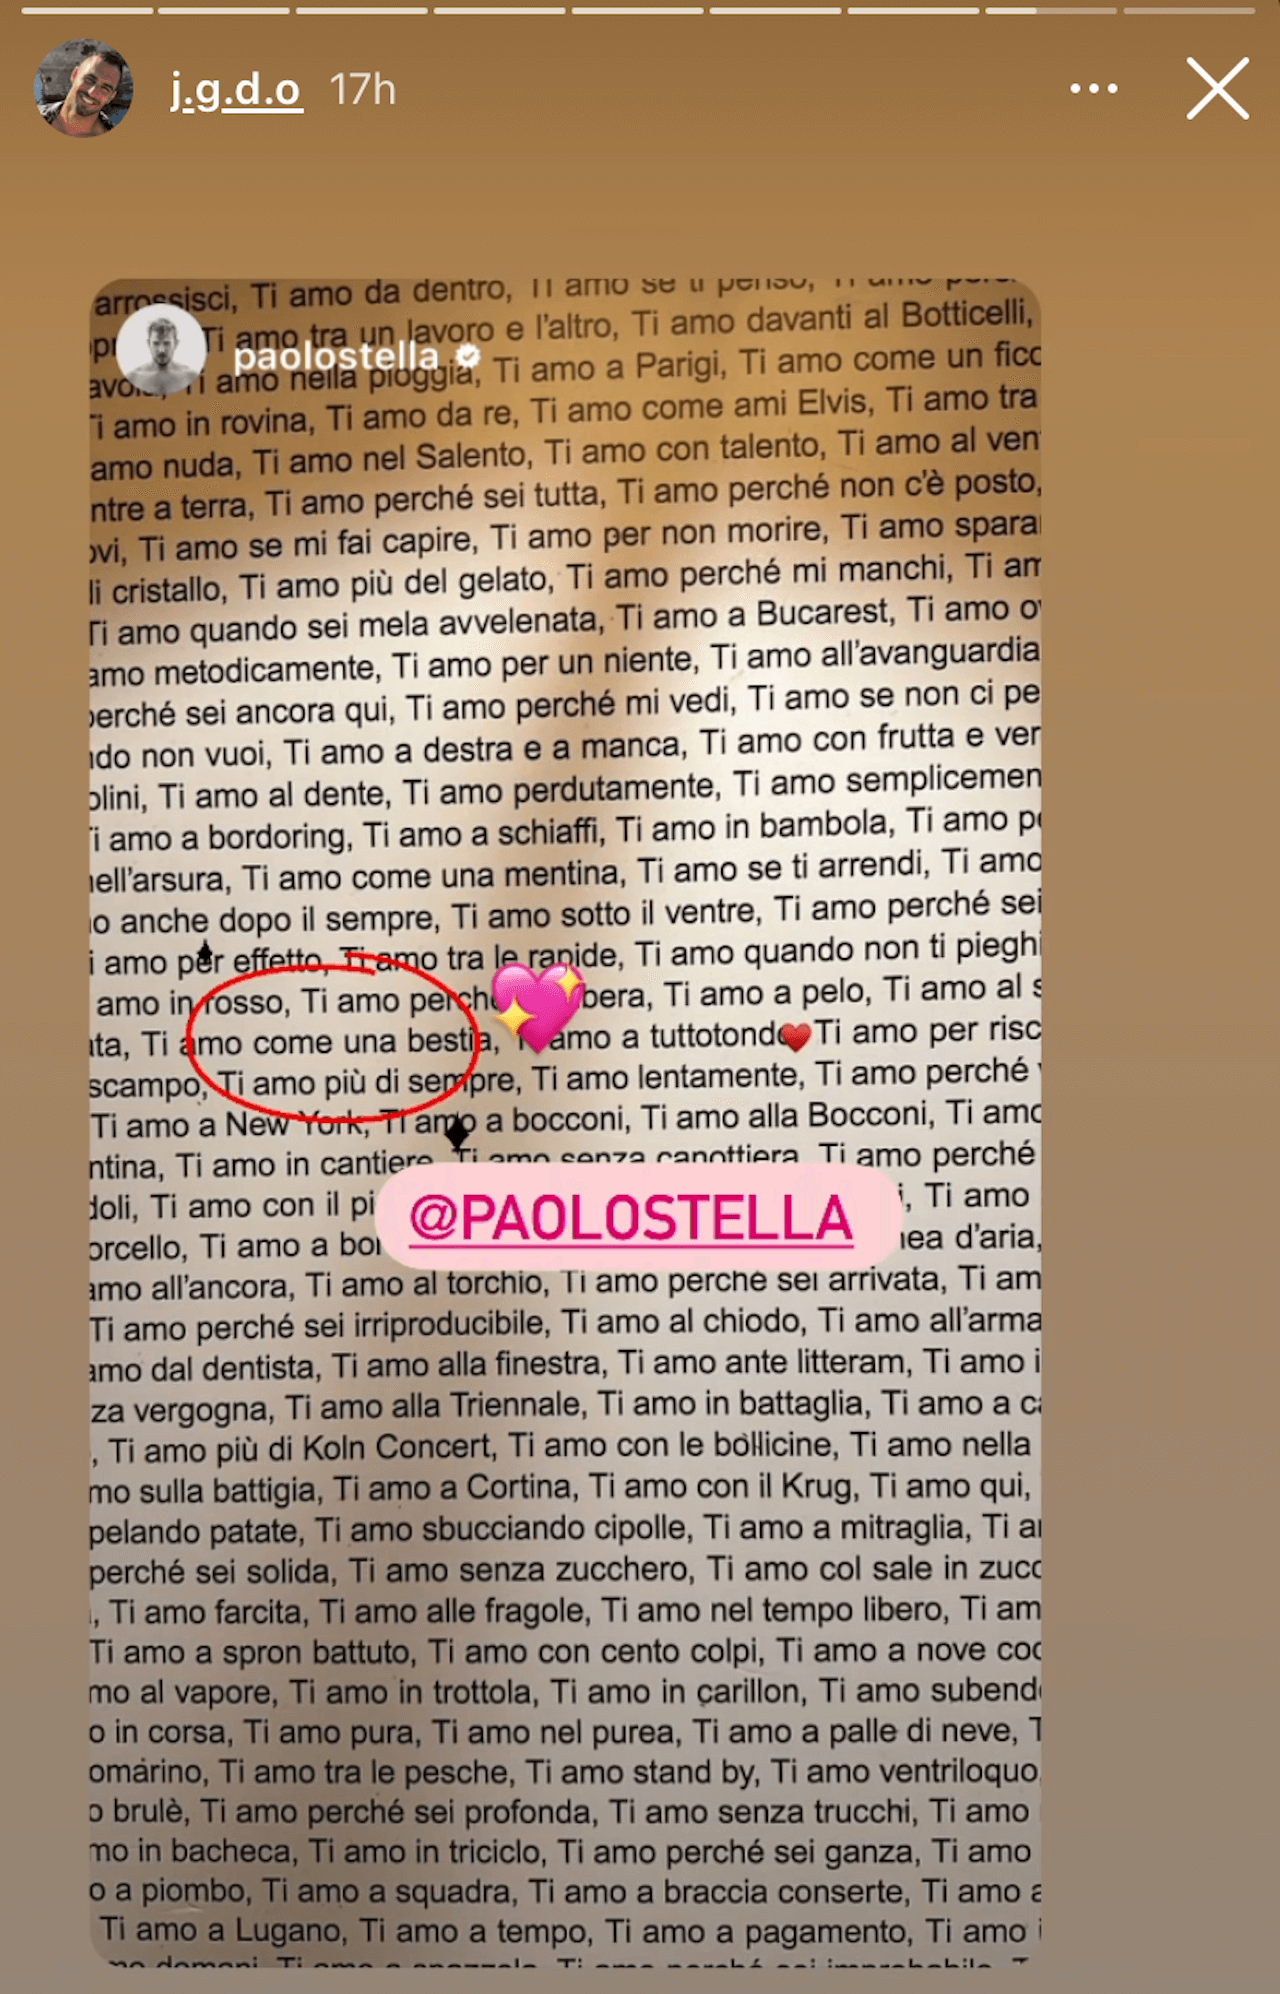 Paolo Stella, domenica in famiglia con il fidanzato J. È amore social - Paolo Stella domenica in famiglia con il fidanzato 2 6 - Gay.it